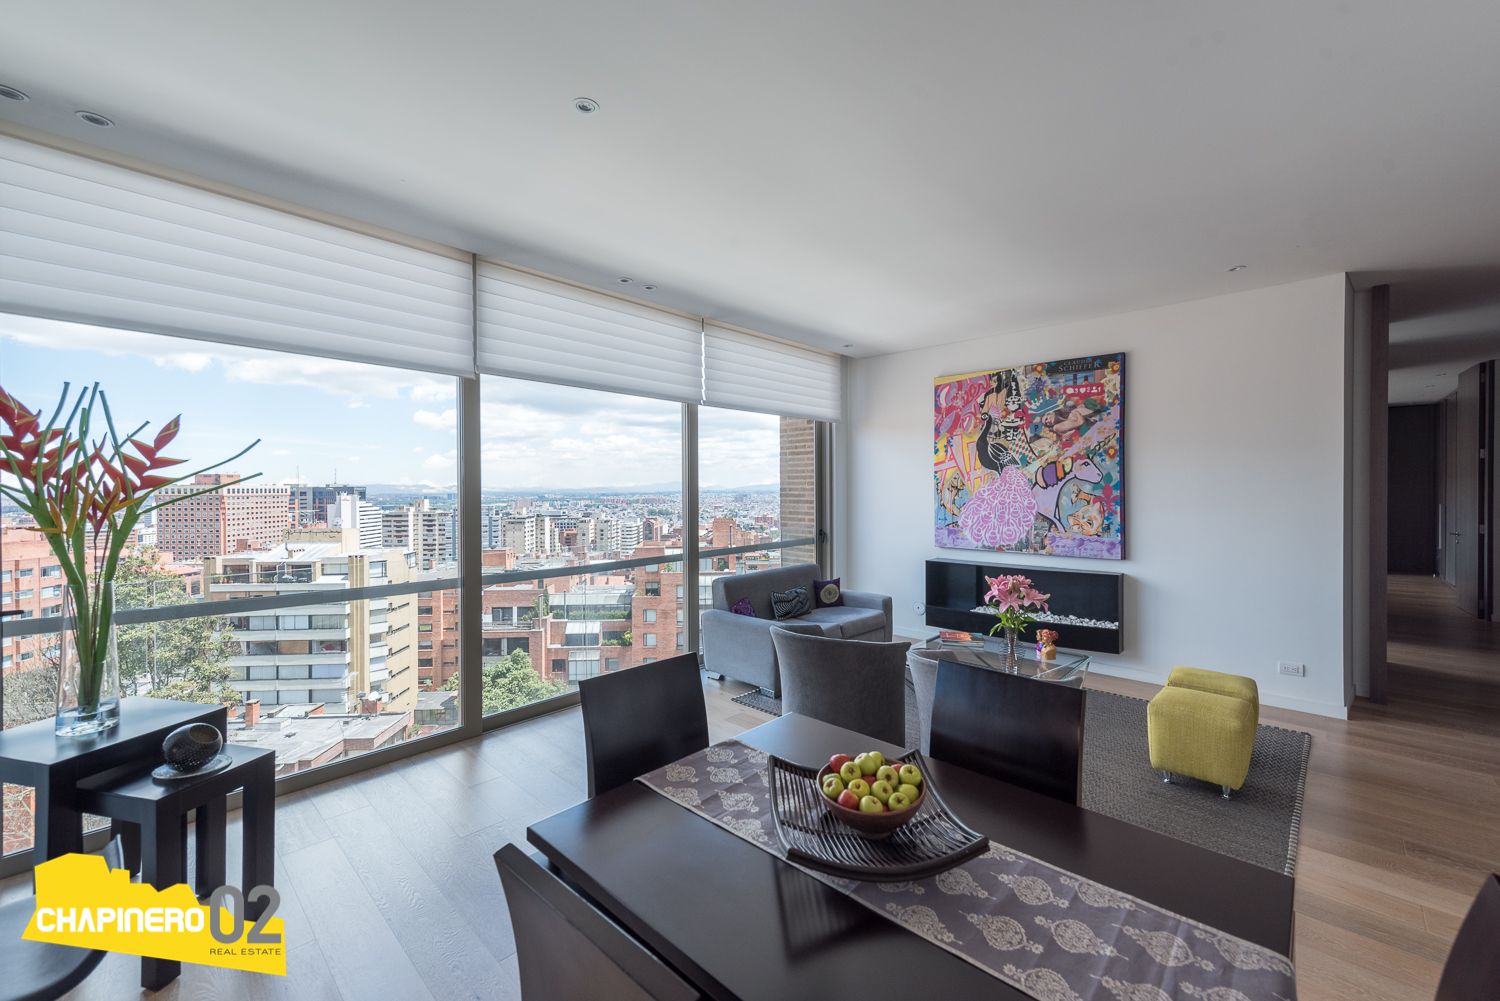 Apartamento en arriendo Bellavista 142 m² - $ 10.800.000,00